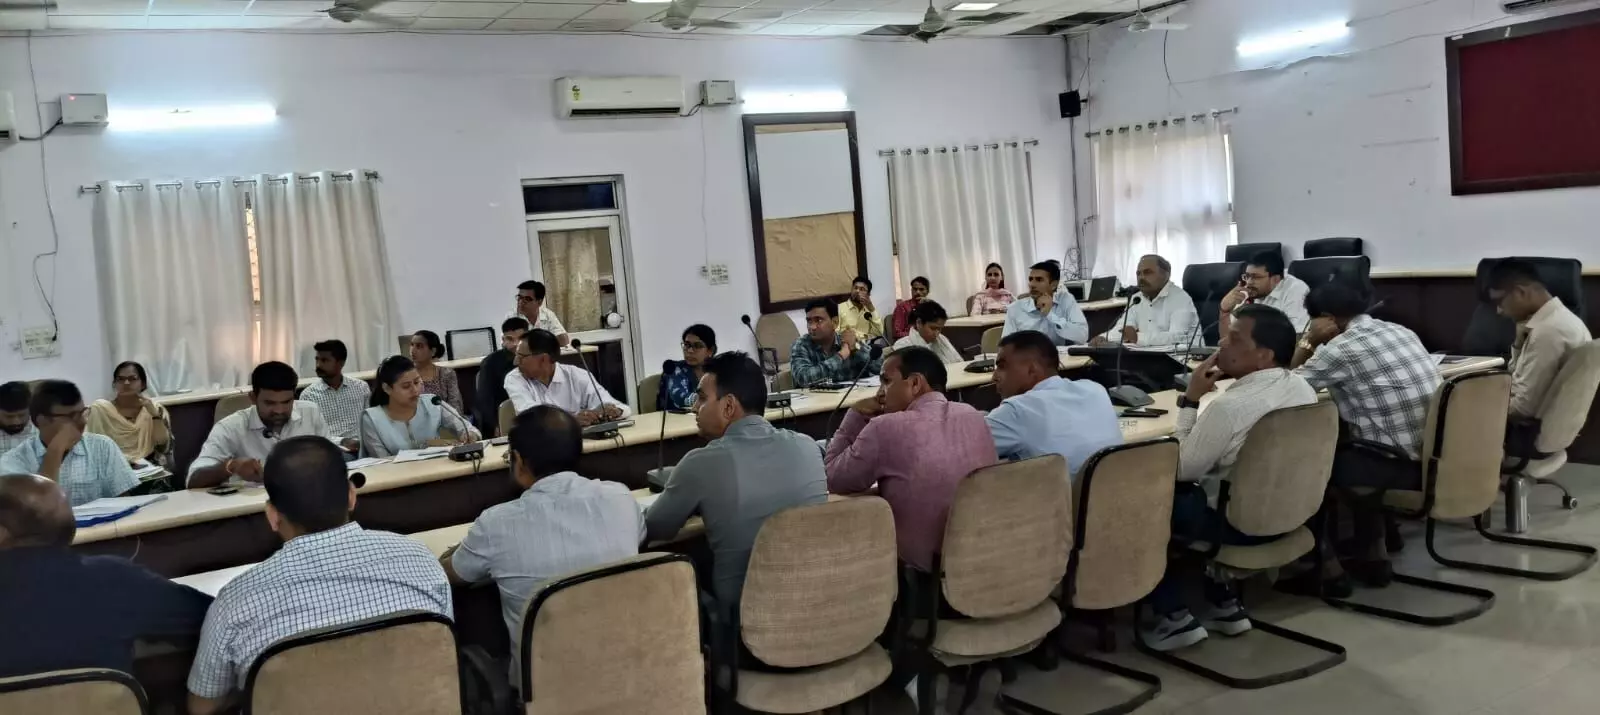 Bhilwara : सिविल रजिस्ट्रेशन प्रणाली की जिला स्तरीय अंतर्विभागीय समन्वय समिति की बैठक आयोजित